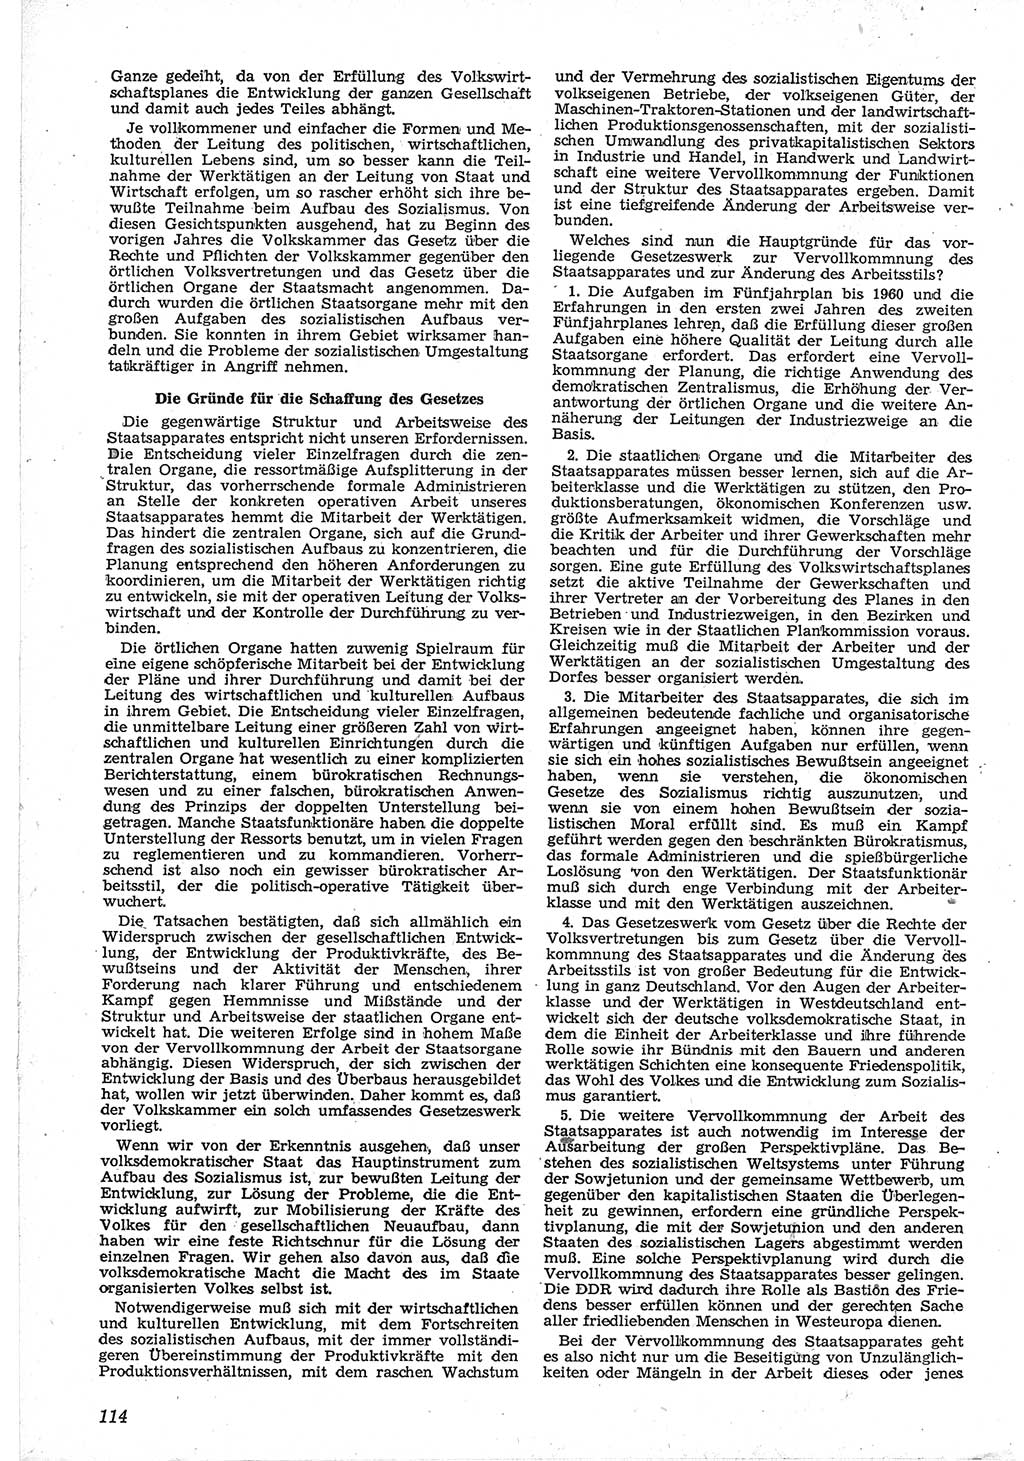 Neue Justiz (NJ), Zeitschrift für Recht und Rechtswissenschaft [Deutsche Demokratische Republik (DDR)], 12. Jahrgang 1958, Seite 114 (NJ DDR 1958, S. 114)